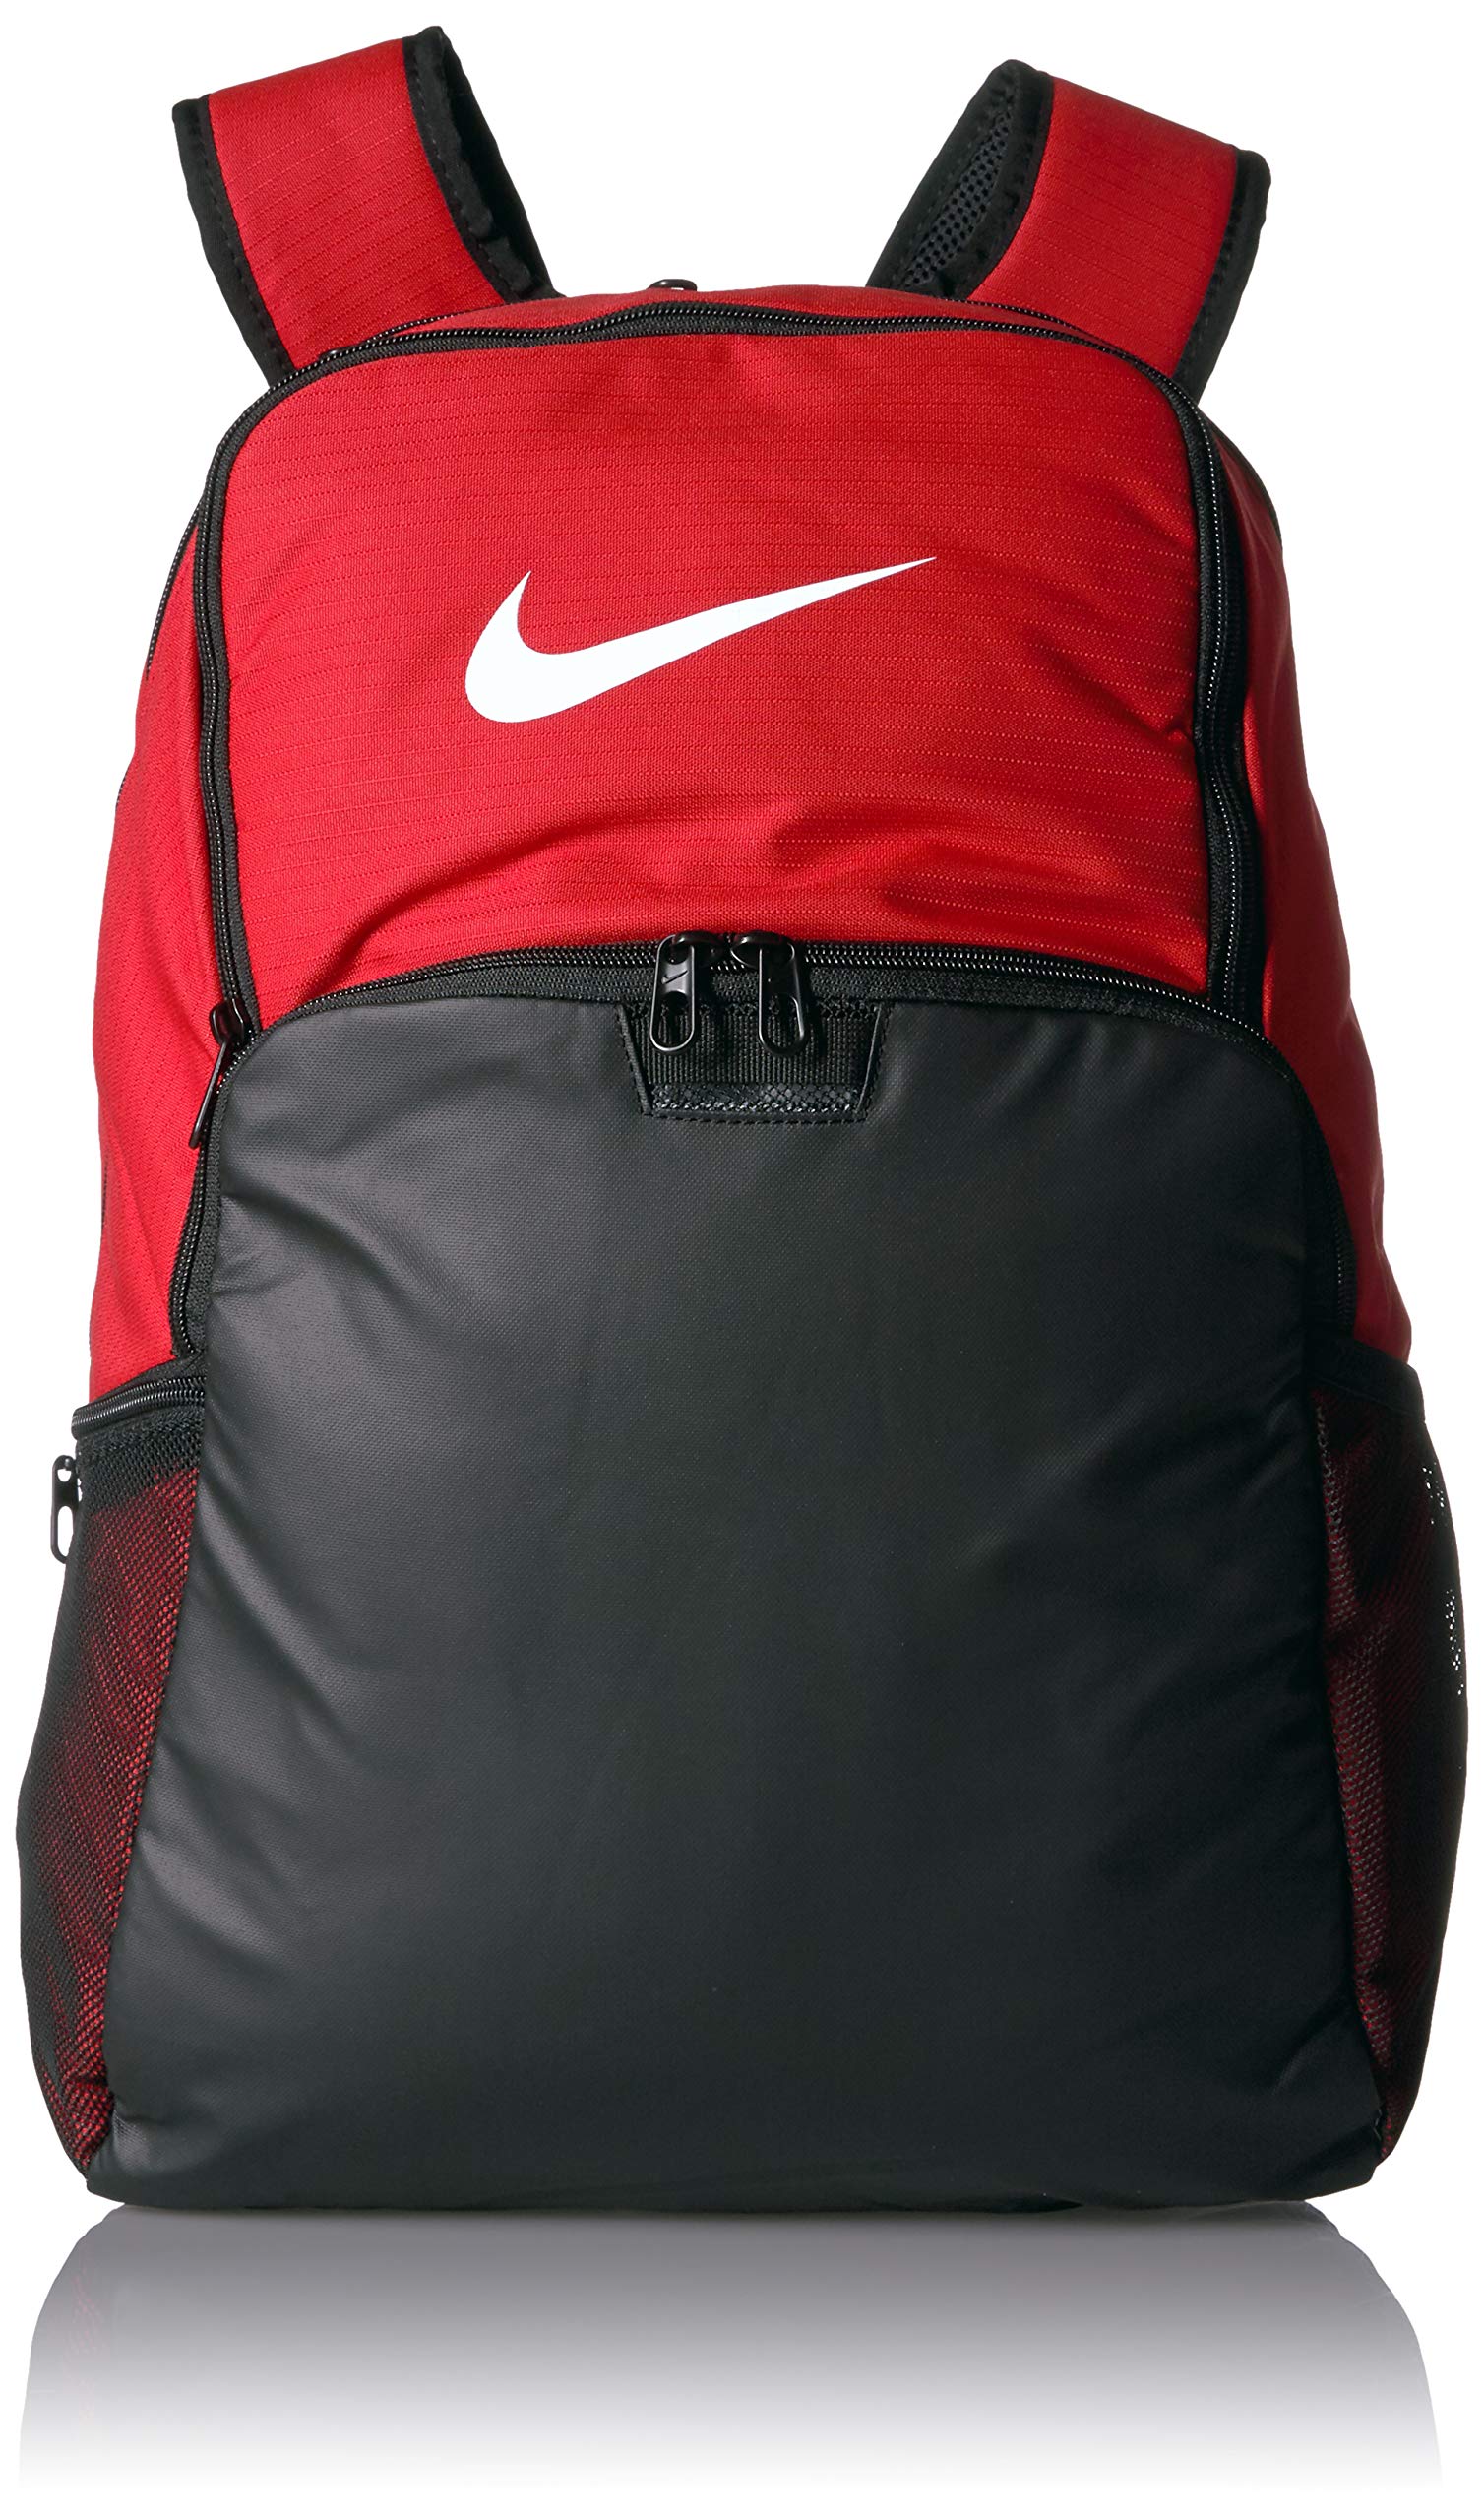 NIKE Brasilia XLarge Backpack 9.0, University Red/Black/White